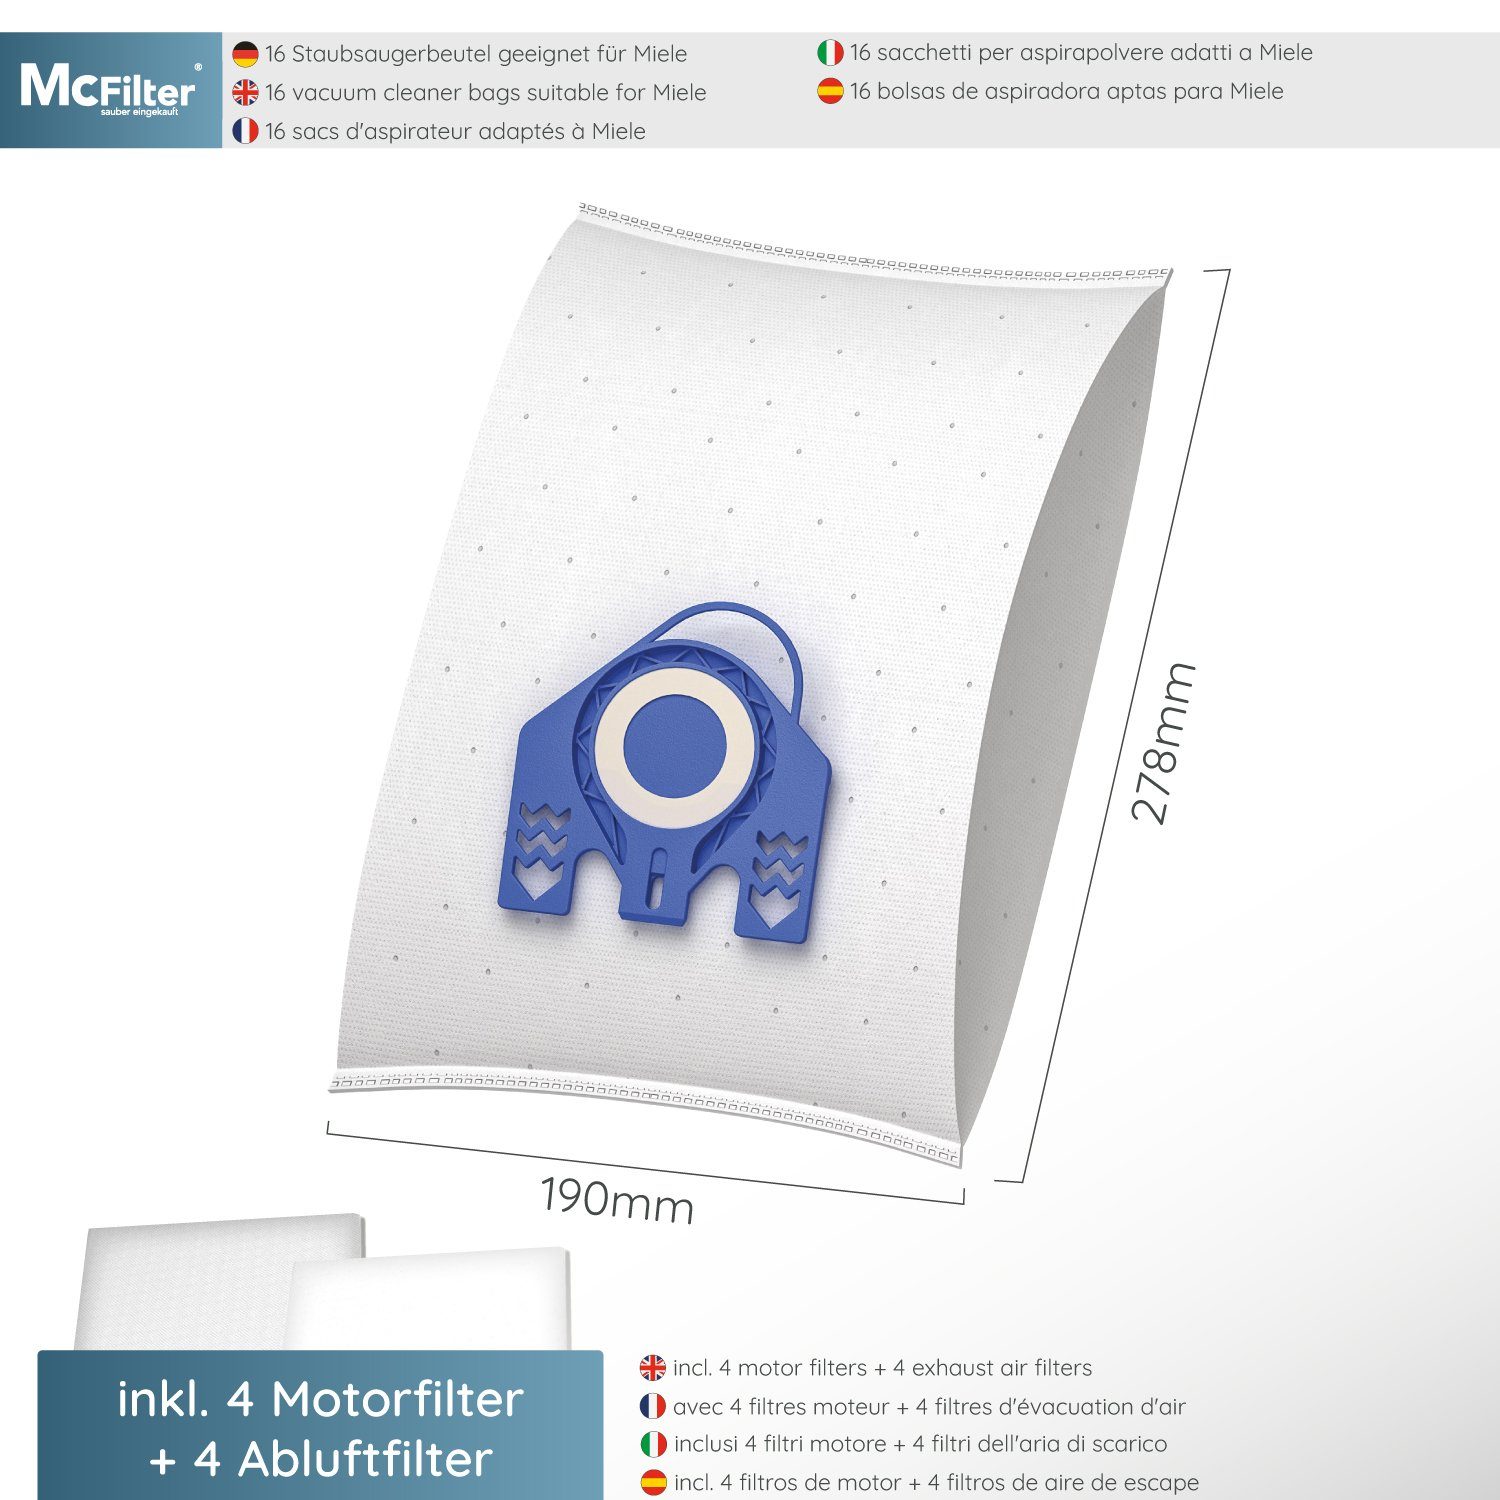 McFilter Staubsaugerbeutel >MAXI BOX< (16+8), Top Complete C3 passend Serie für wie 9917730, 10408410 Miele Filter, 16 St., Miele 8 Alternative Staubsauger, zu inkl